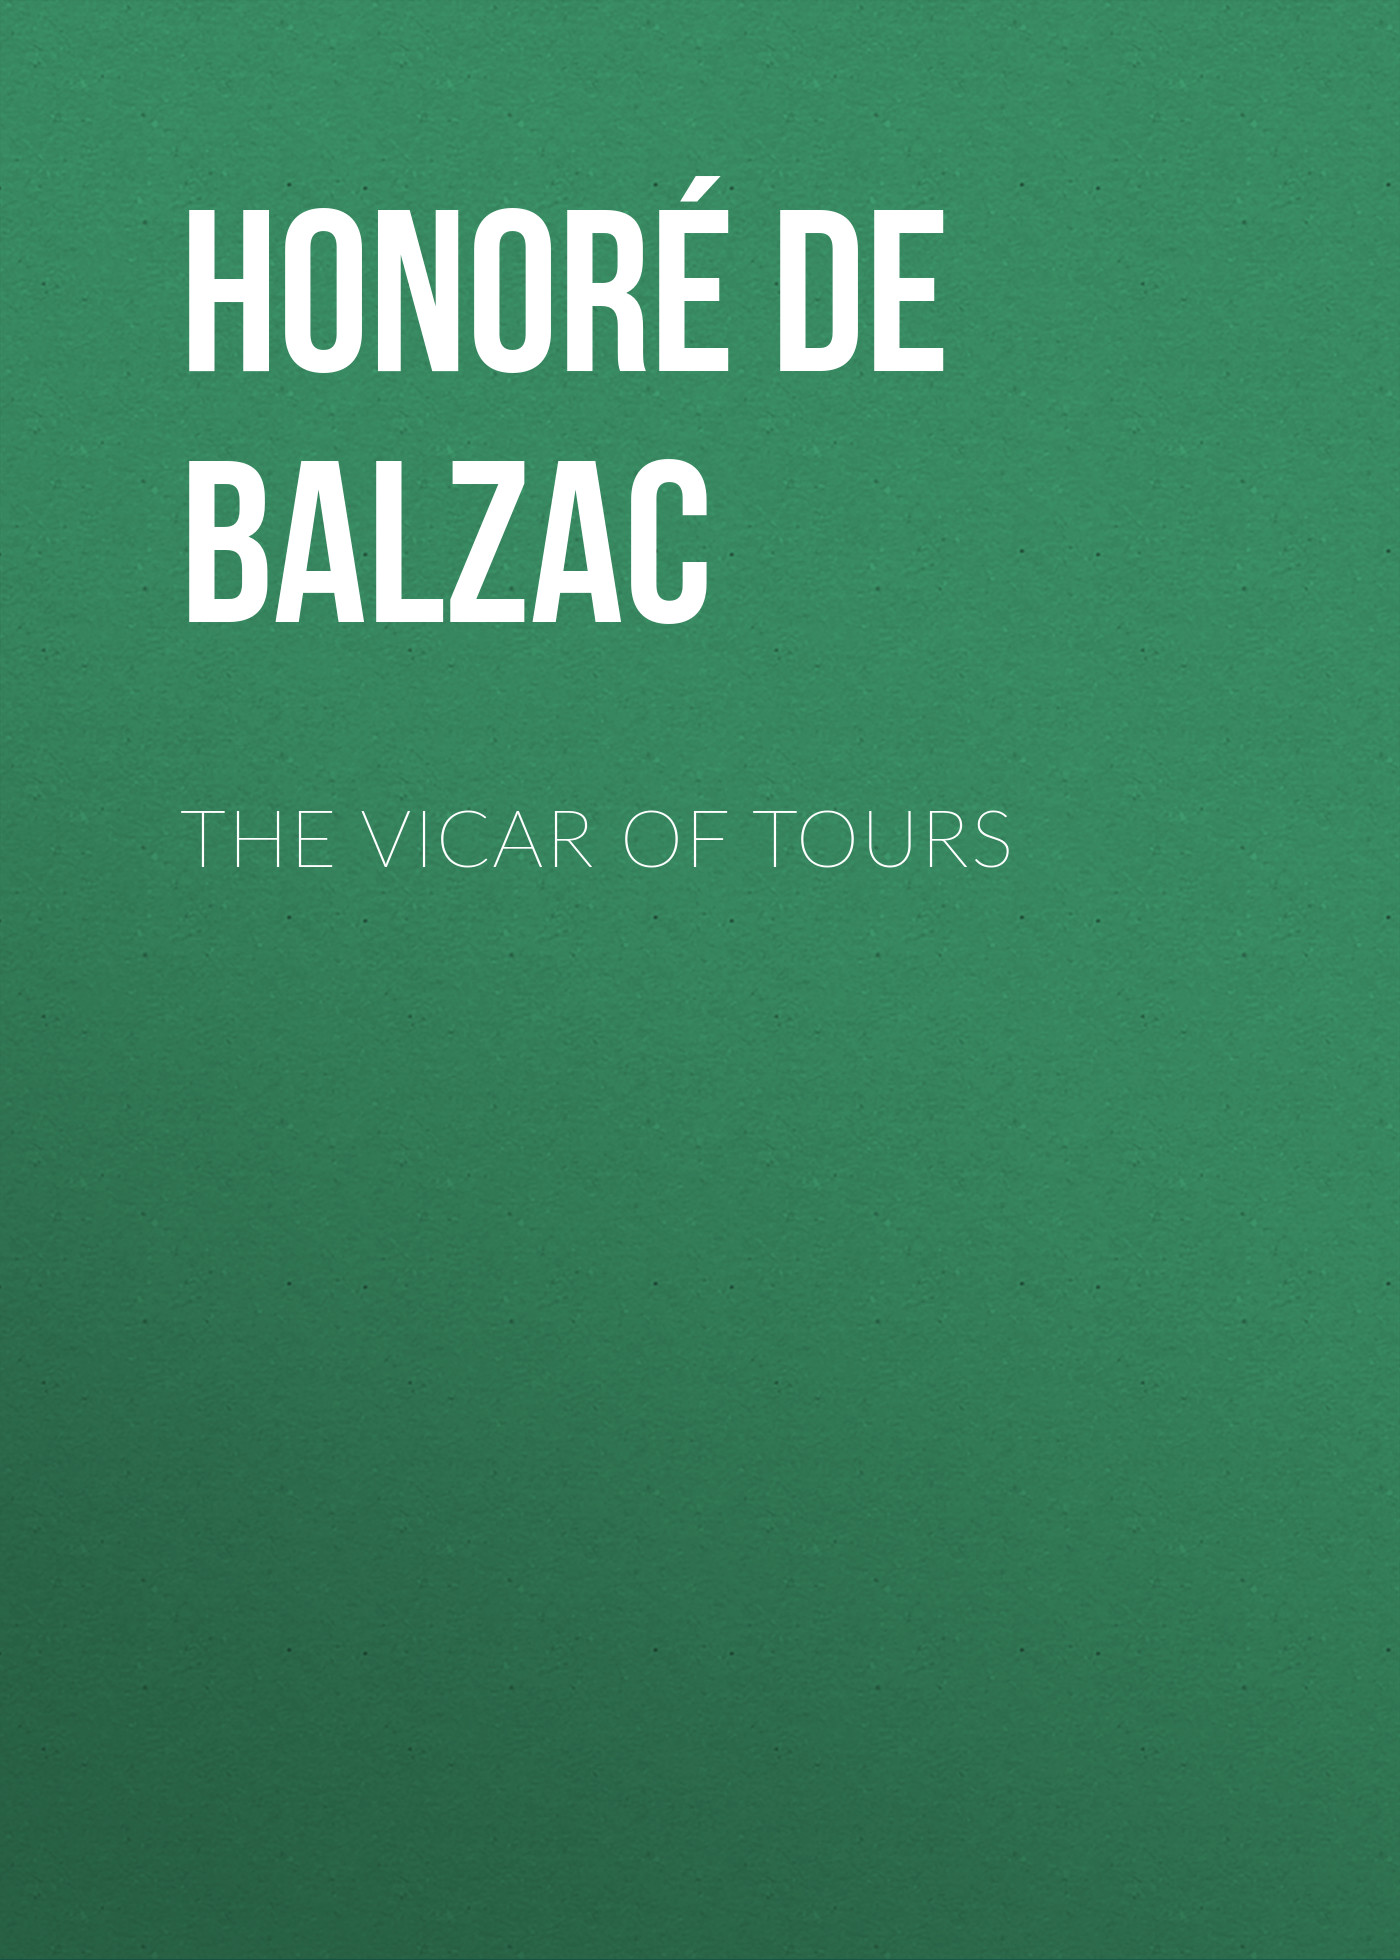 Книга The Vicar of Tours из серии , созданная Honoré Balzac, может относится к жанру Литература 19 века, Зарубежная старинная литература, Зарубежная классика. Стоимость электронной книги The Vicar of Tours с идентификатором 25021243 составляет 0 руб.